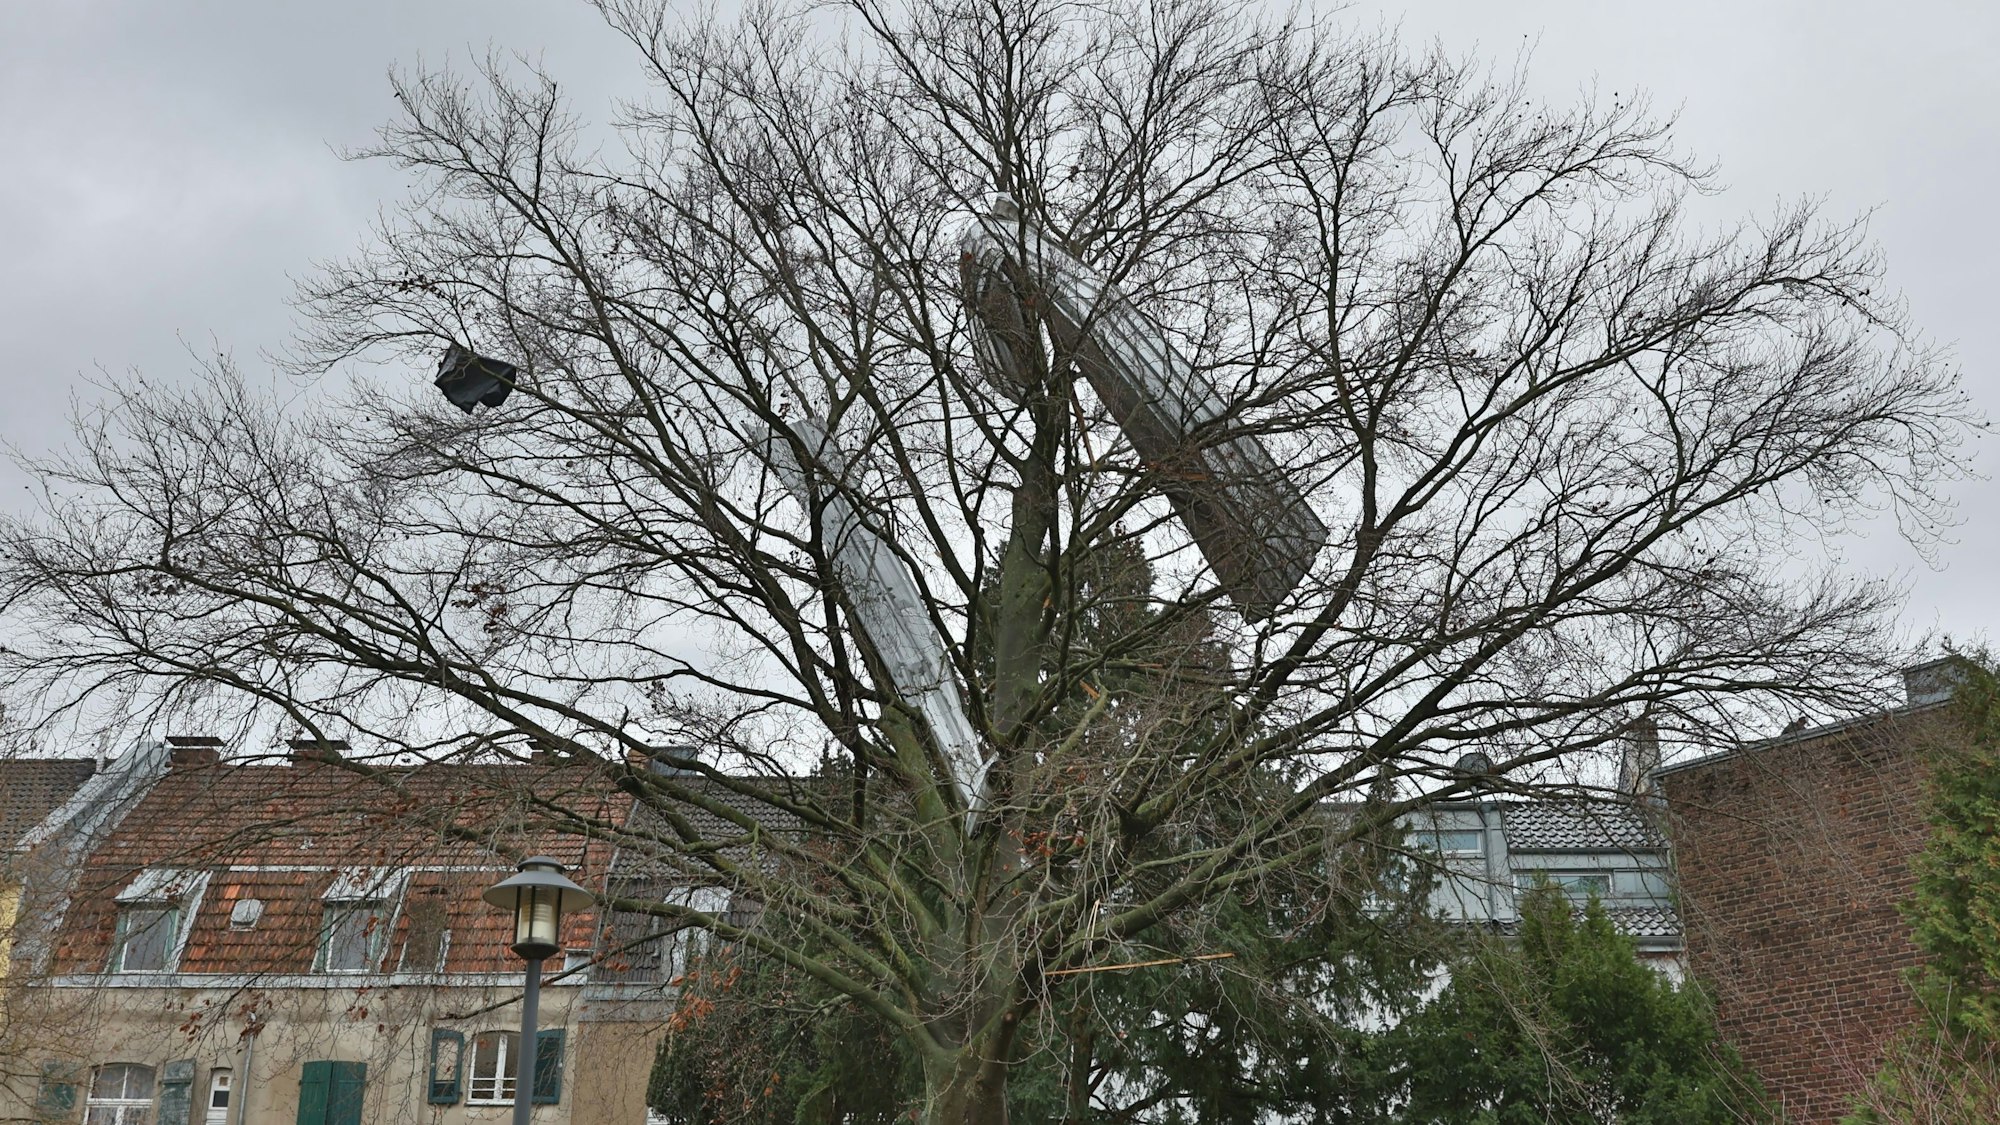 Teile eines Aludachs hängen in einem Baum fest.